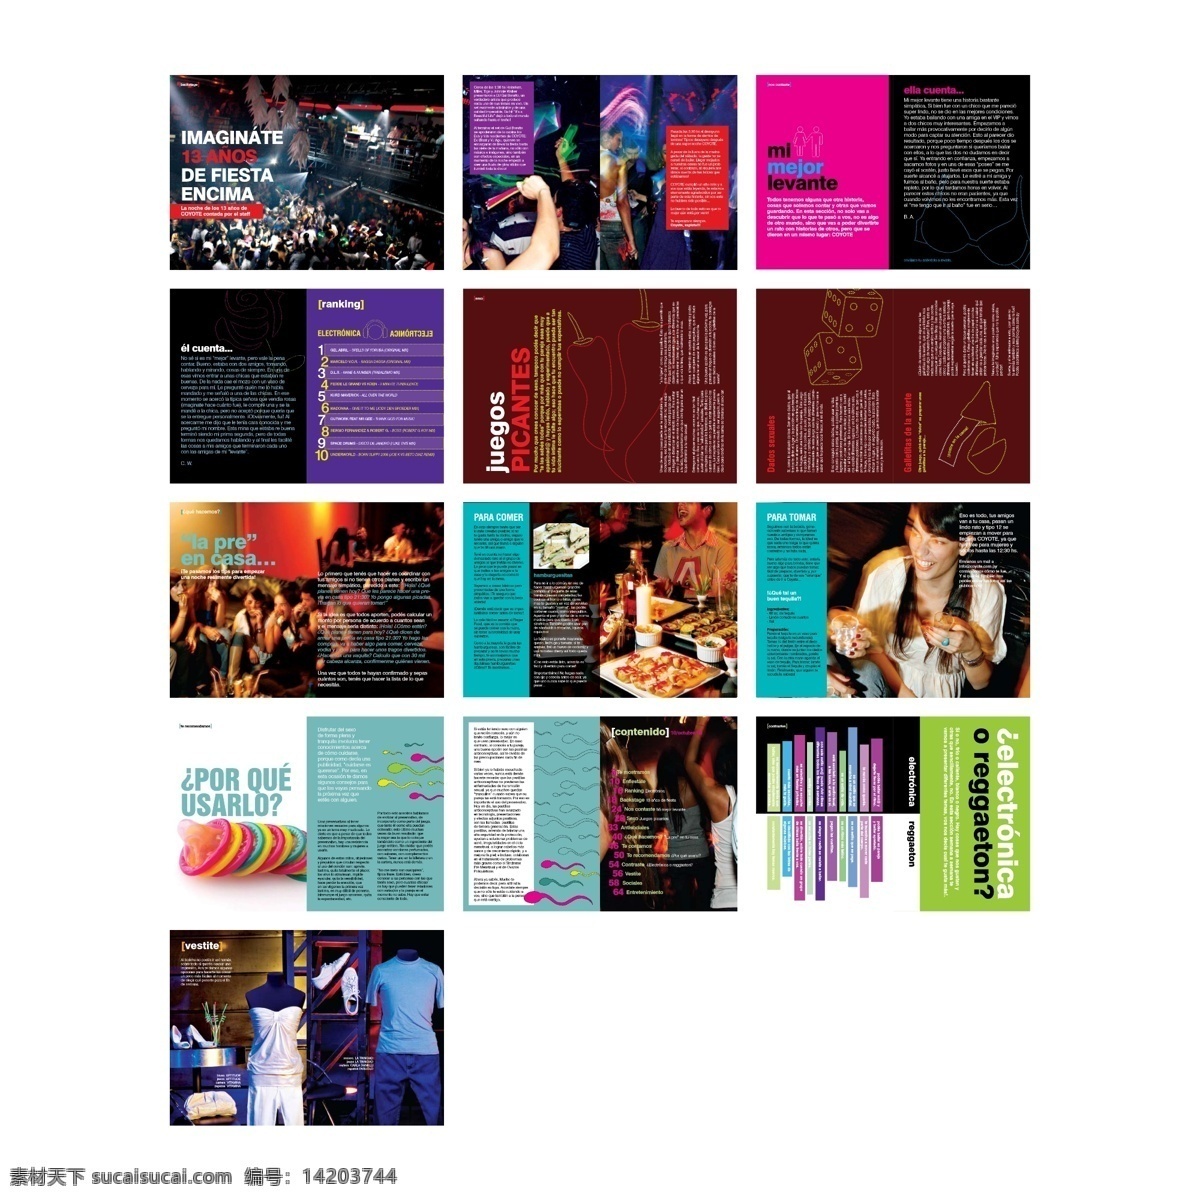 狂欢节 画册设计 狂欢 美食 酒吧 演唱会 创意设计 简洁版式 杂志封面设计 封面设计 版式设计 杂志设计 杂志版式 白色